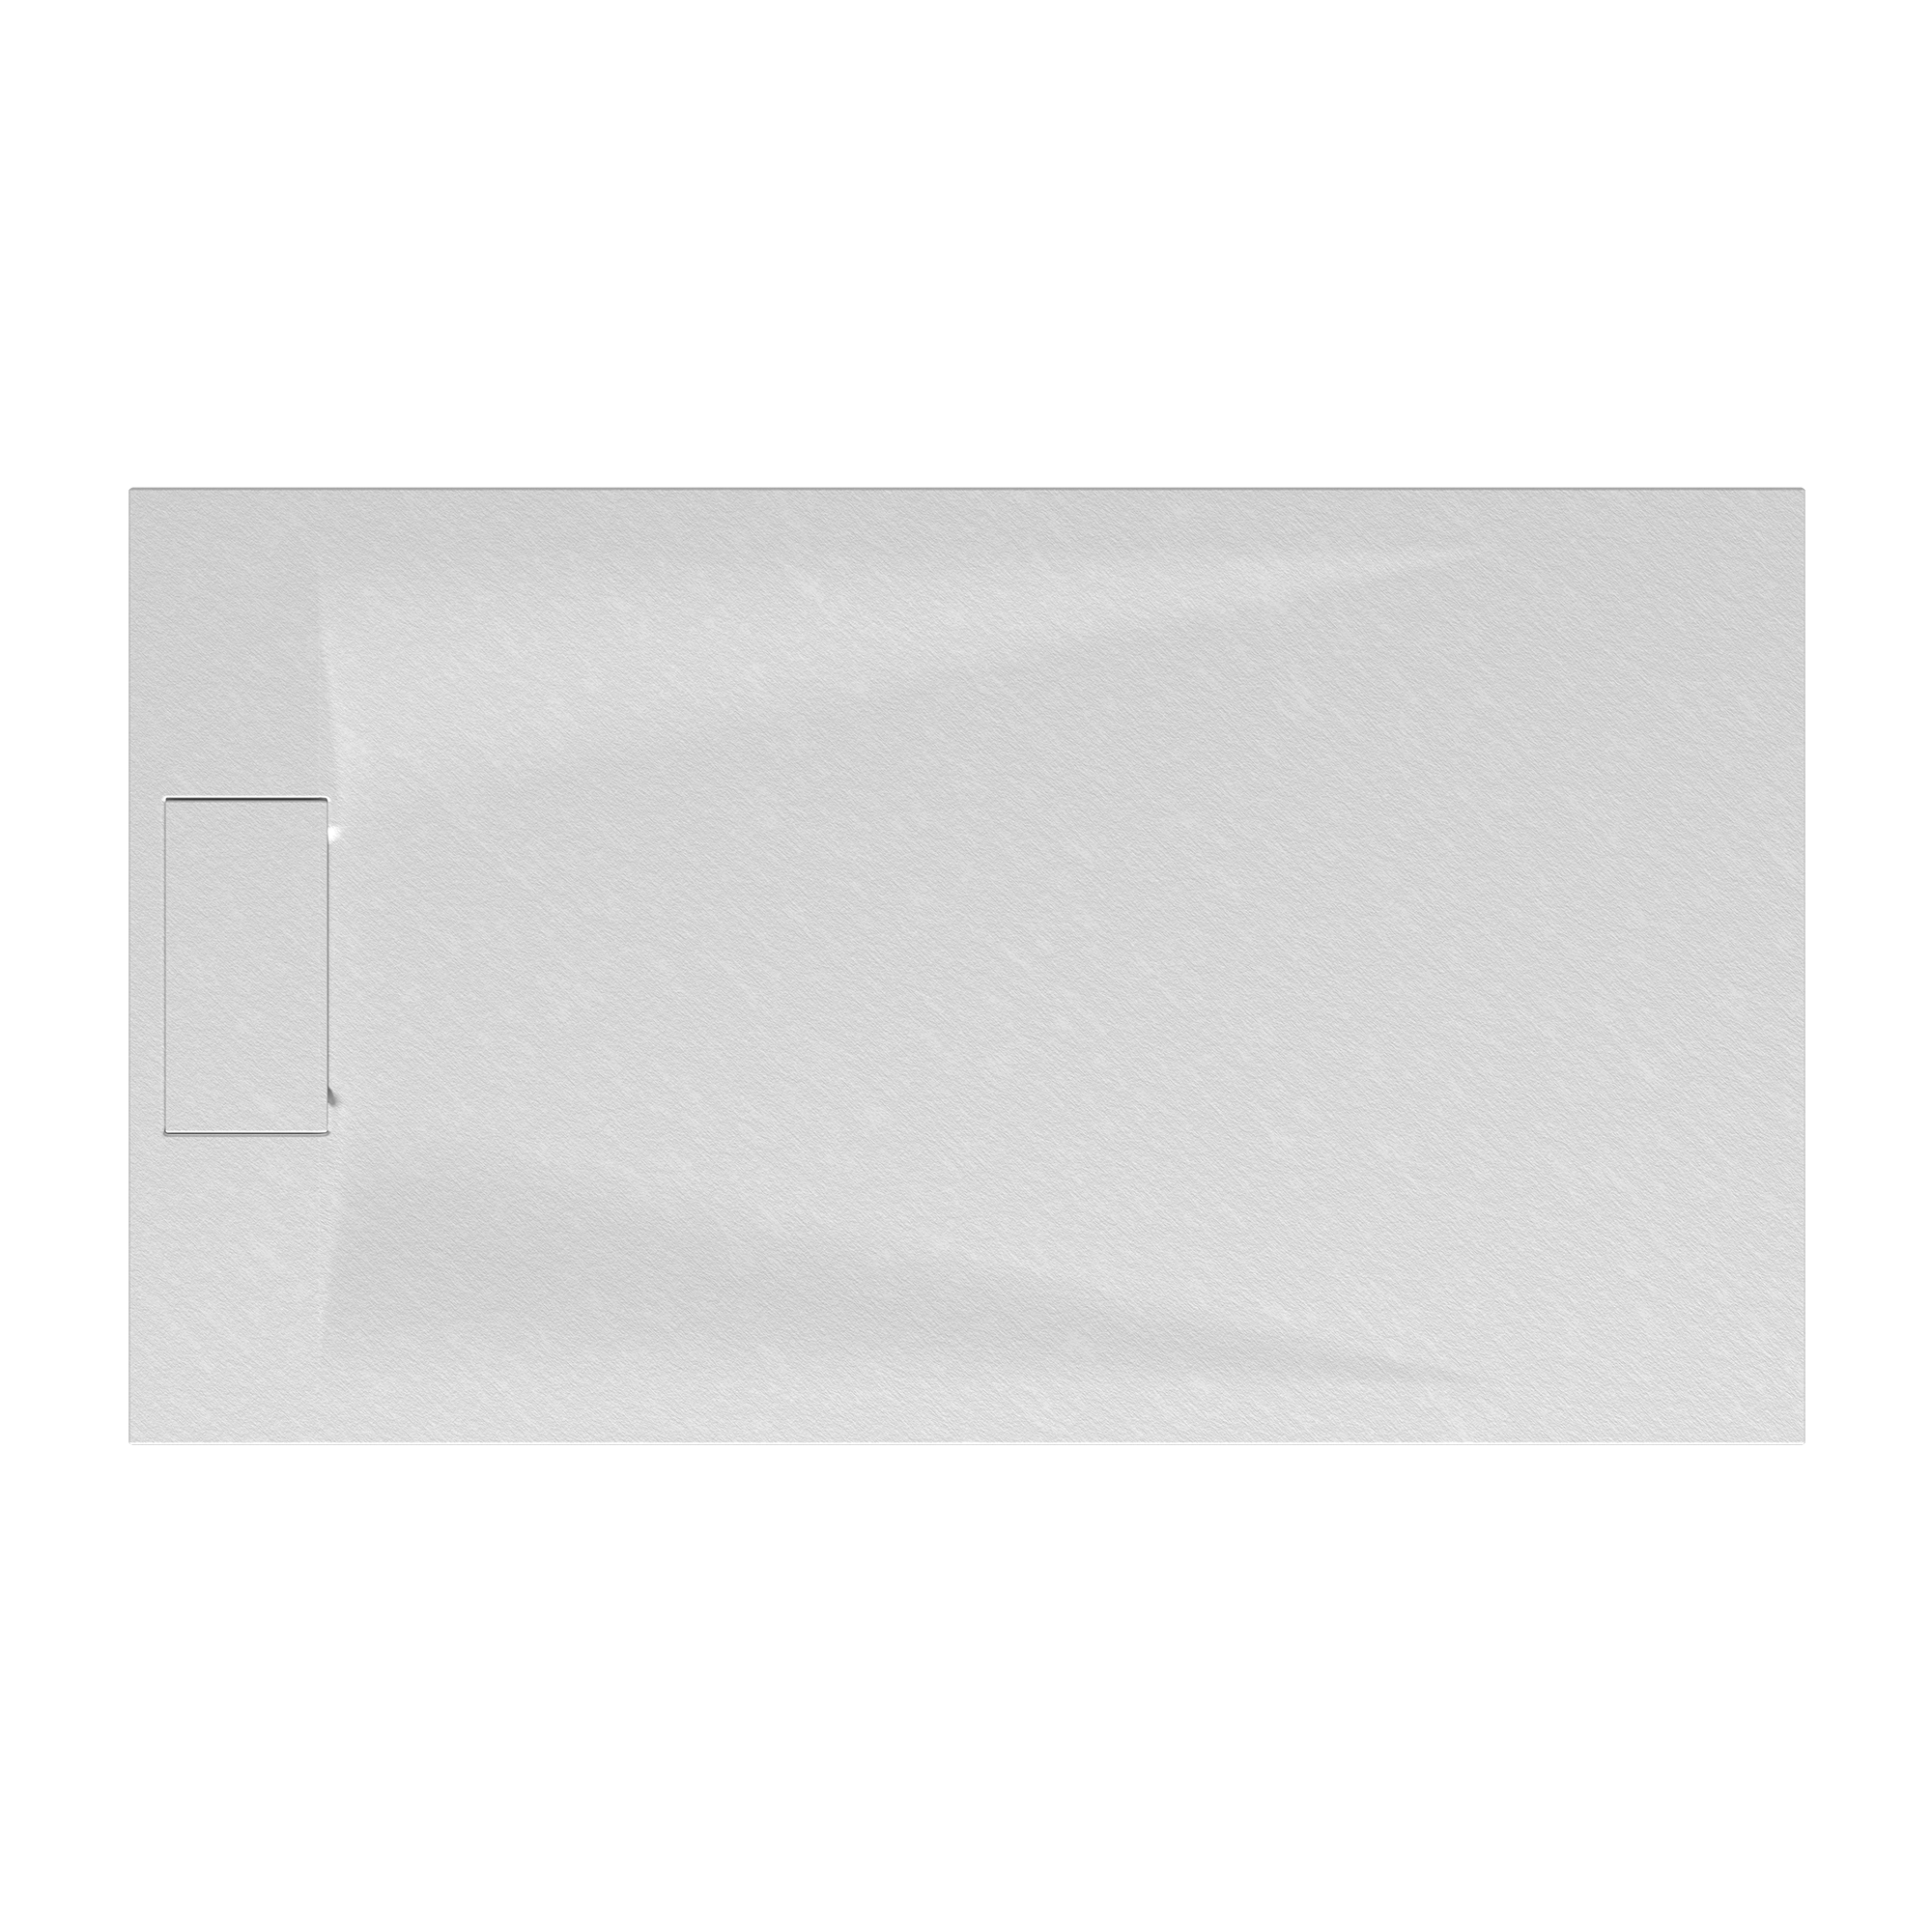 Duschwanne 'Lite Line' Steinoptik weiß 90 x 120 cm + product picture